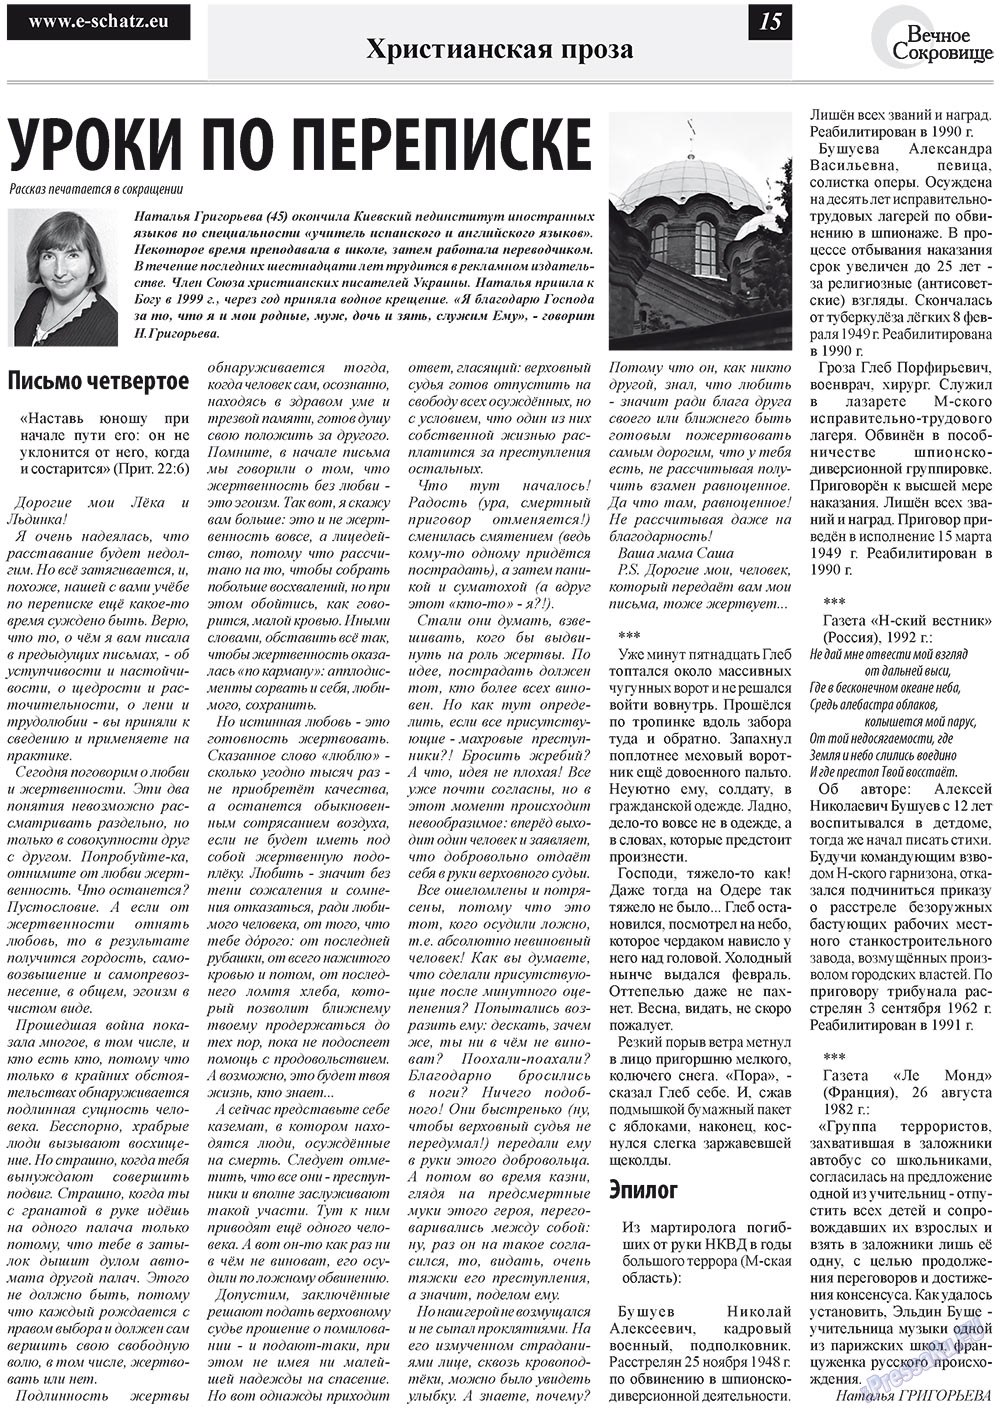 Вечное сокровище (газета). 2012 год, номер 1, стр. 15